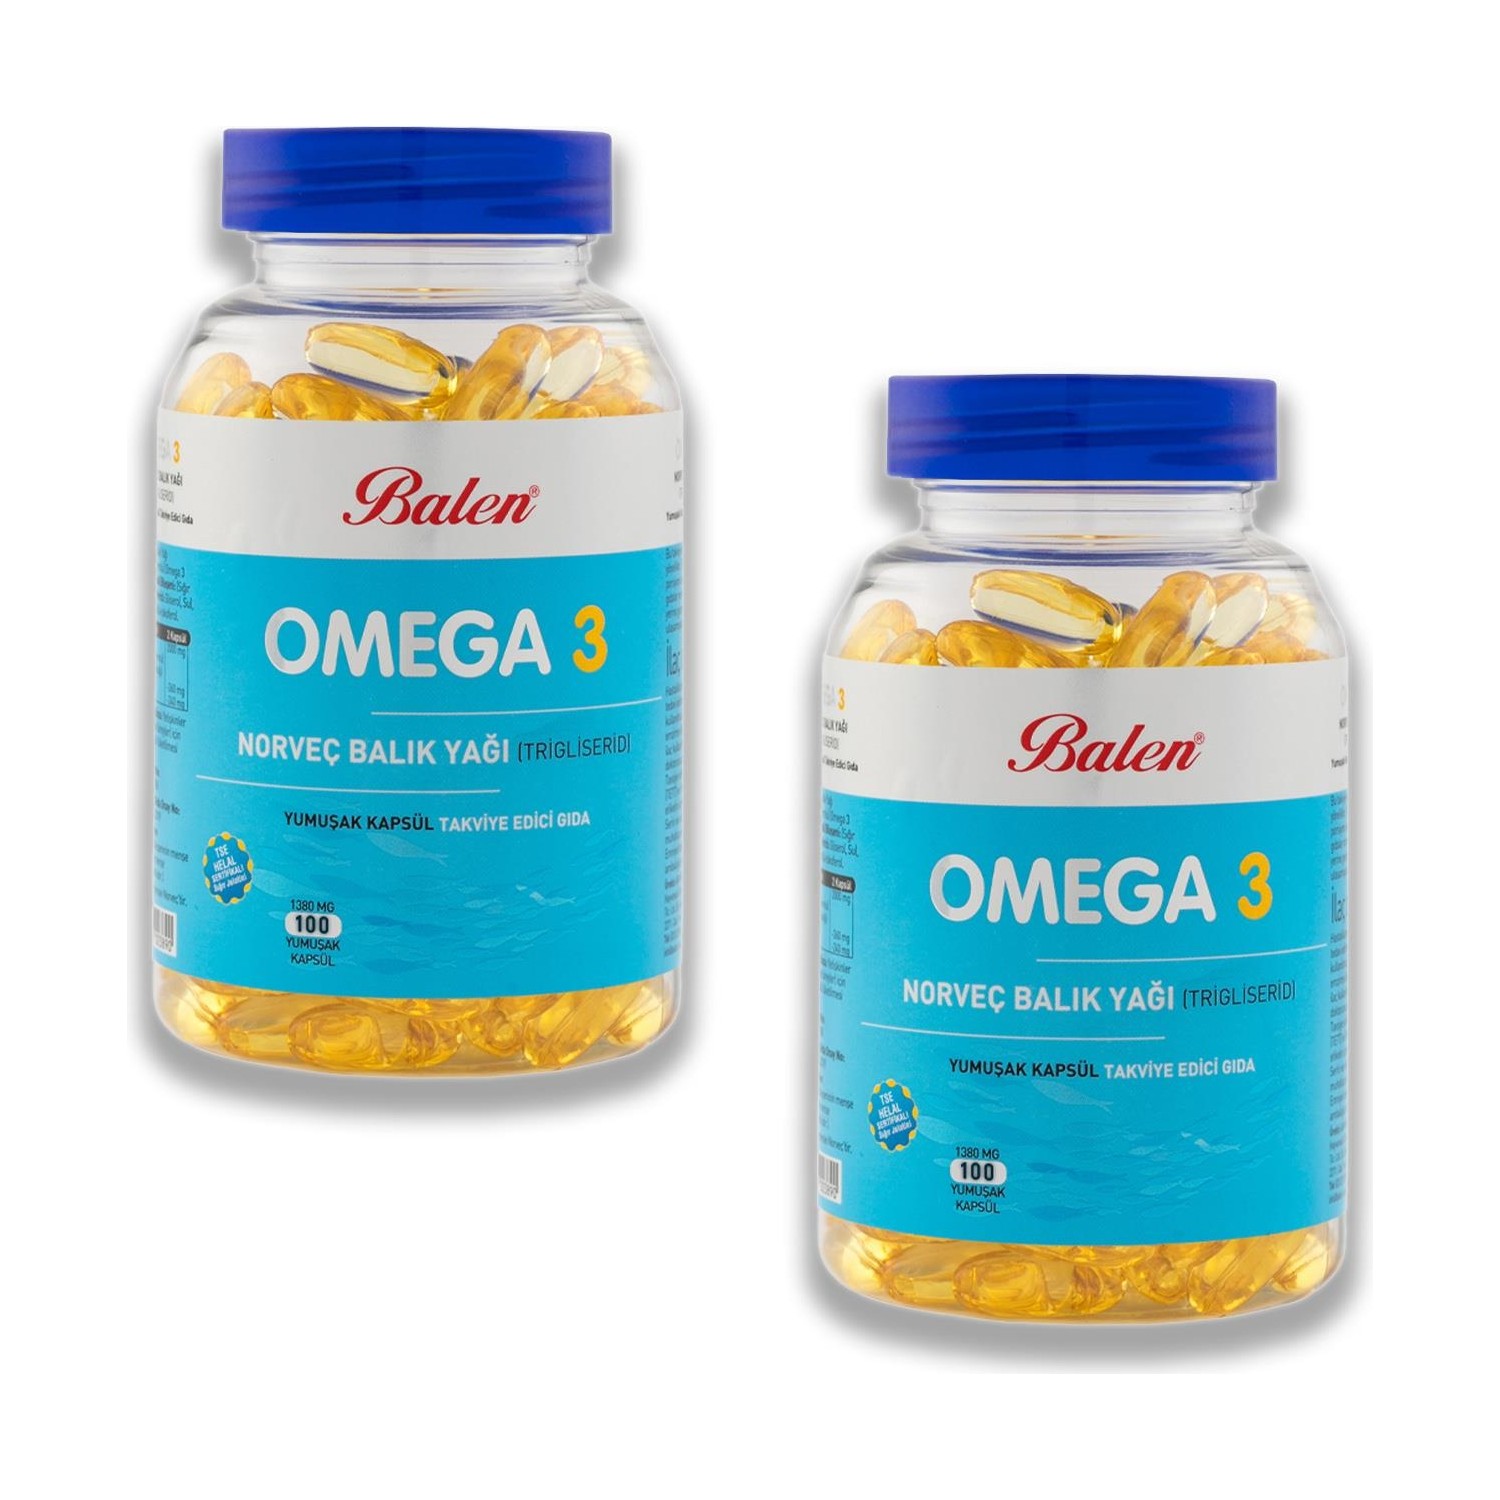 рыбий жир balen omega 3 100 мягких капсул 1380 мг 2 штуки Норвежский рыбий жир Balen Omega-3 (триглицерид) 1380 мг, 2 упаковки по 100 капсул